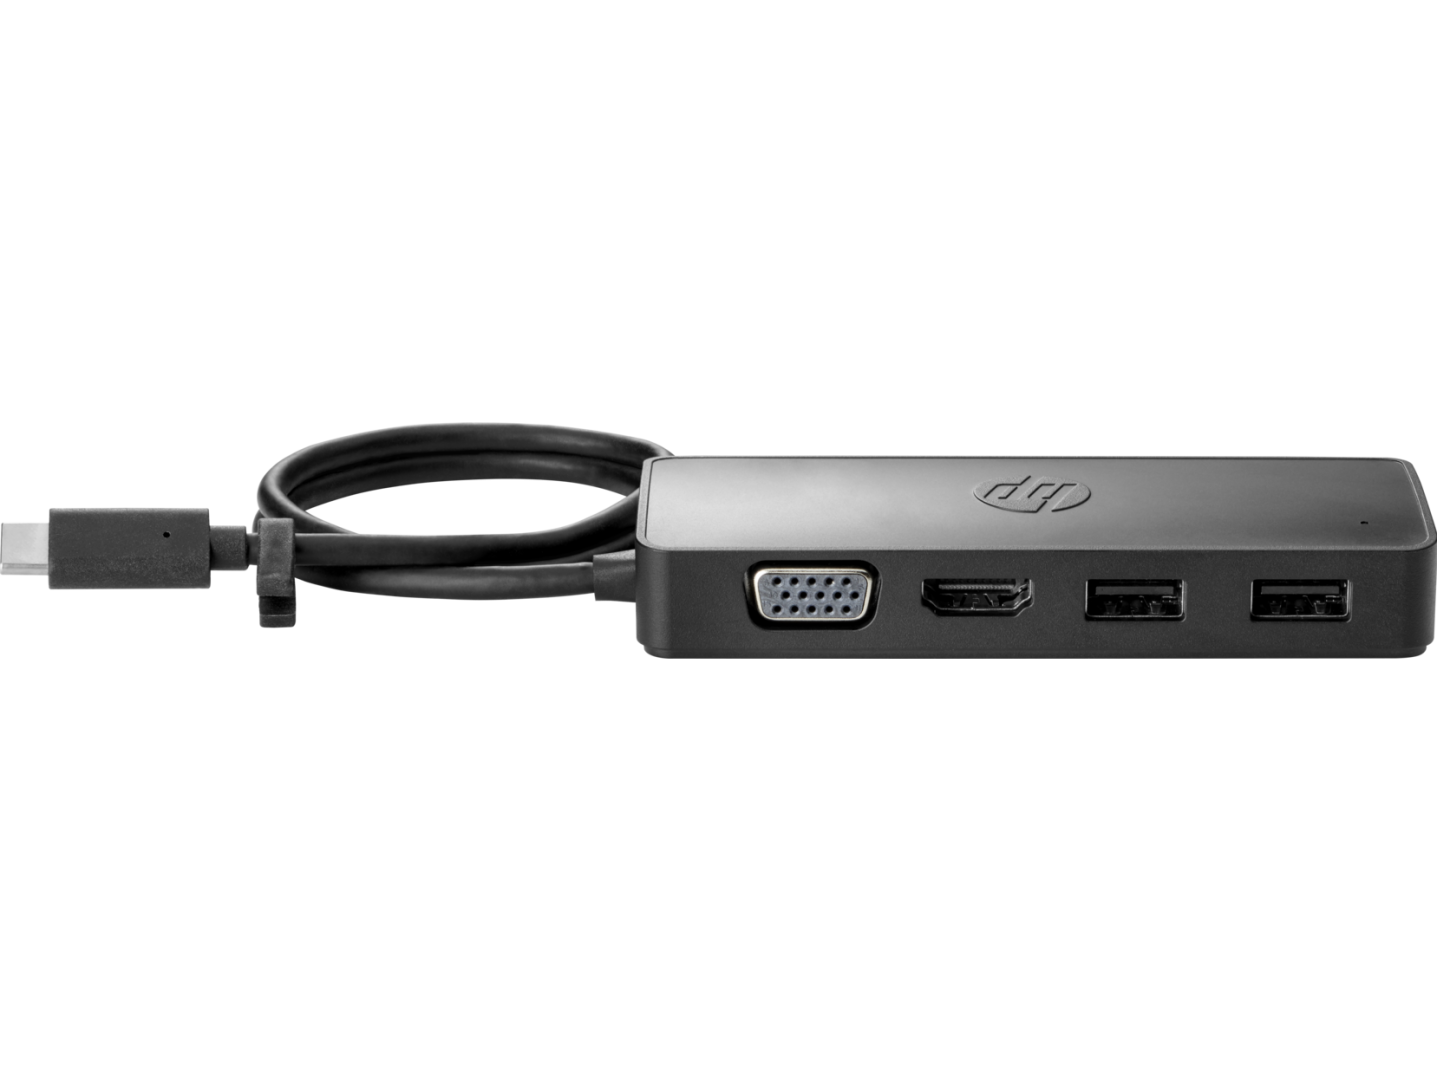 HP USB-C Travel Hub G2 EURO, Porturi: 2x USB-A 3.0, 1x USB-C, 1x HDMI, 1x VGA; Culoare: negru, Dimensiuni: 10,7x4,1x1,7 cm, Greutate: 0.07kg